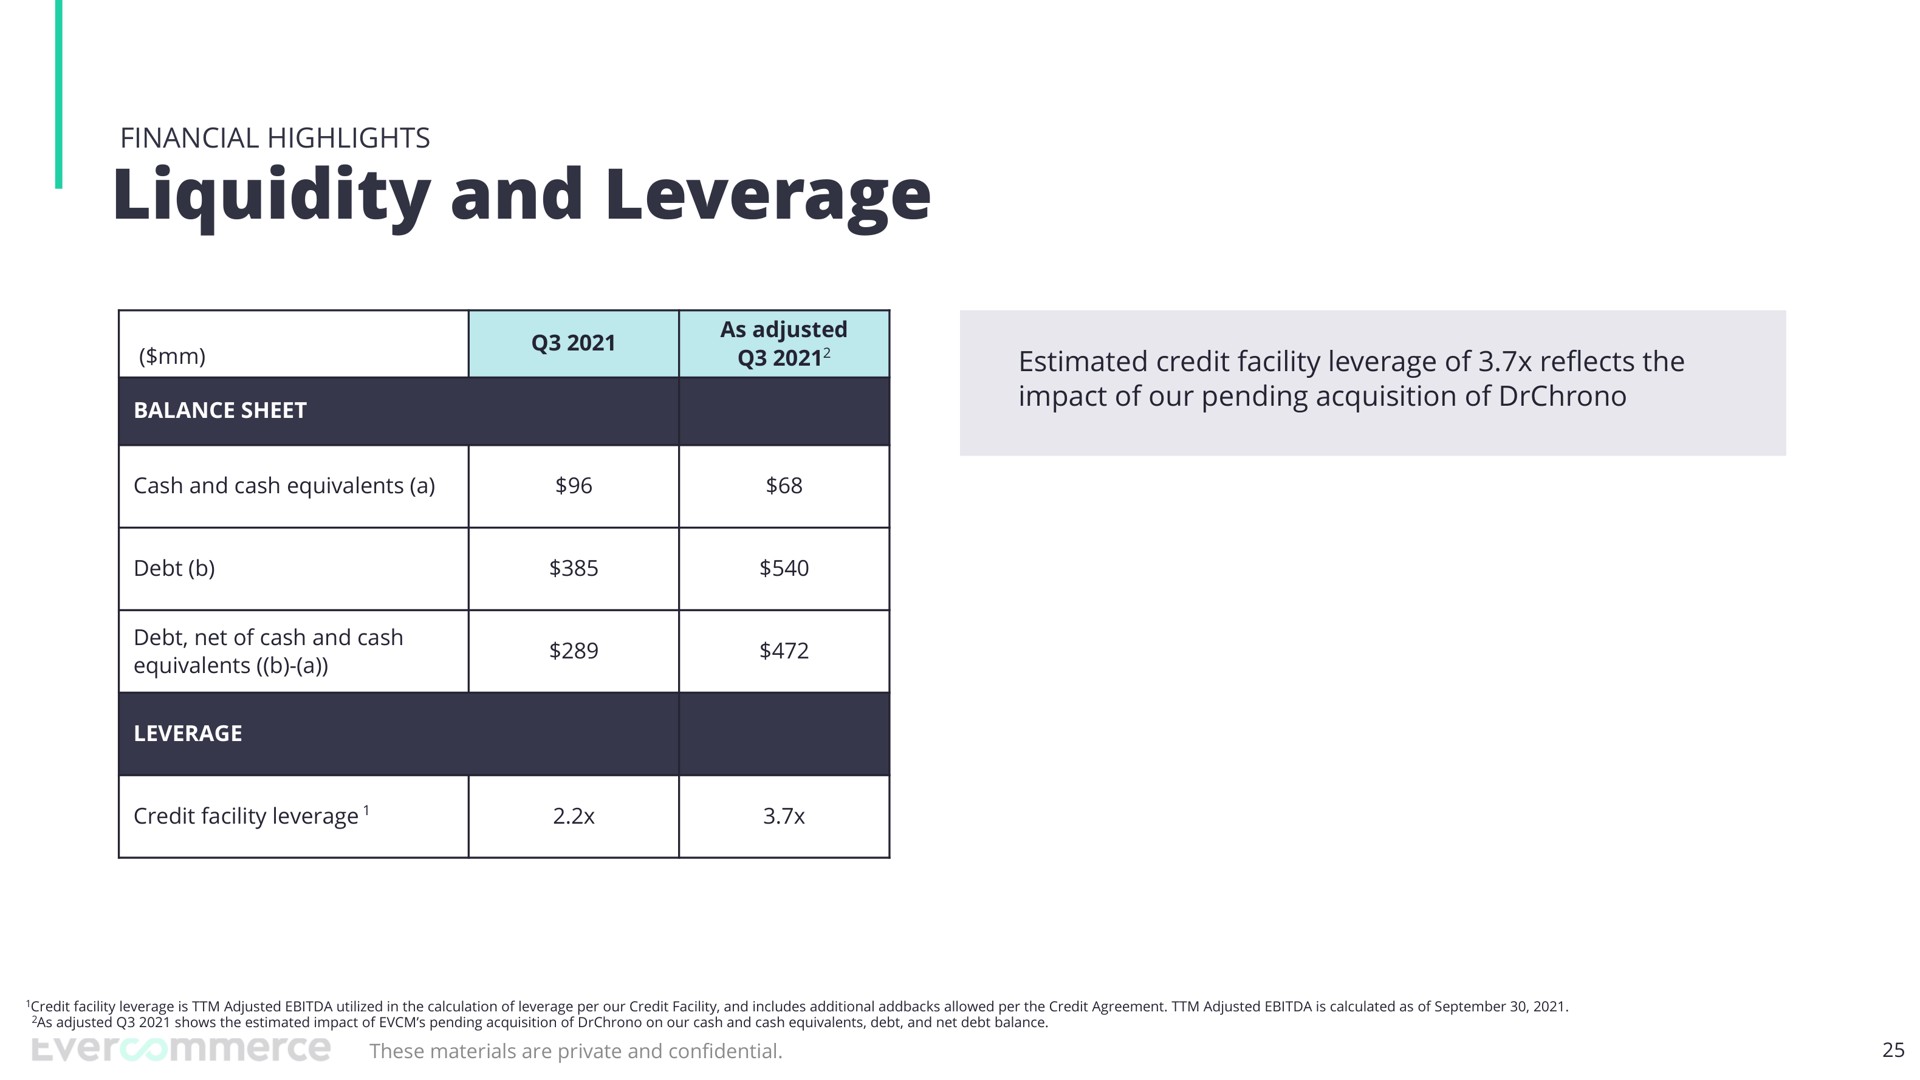 liquidity and leverage | EverCommerce